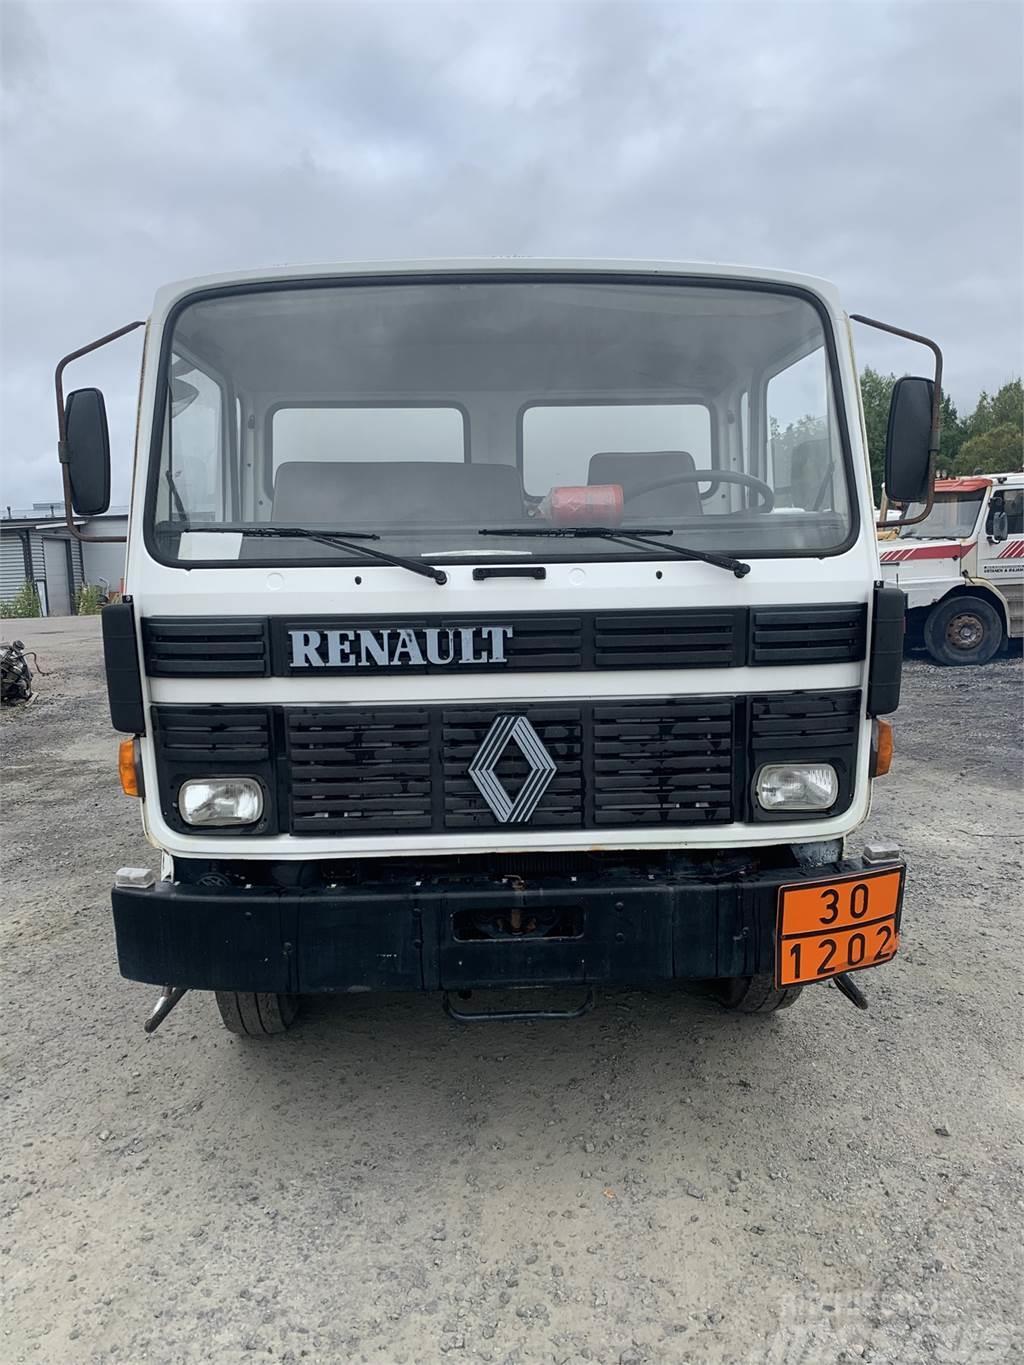 Renault S 130 Tanker trucks